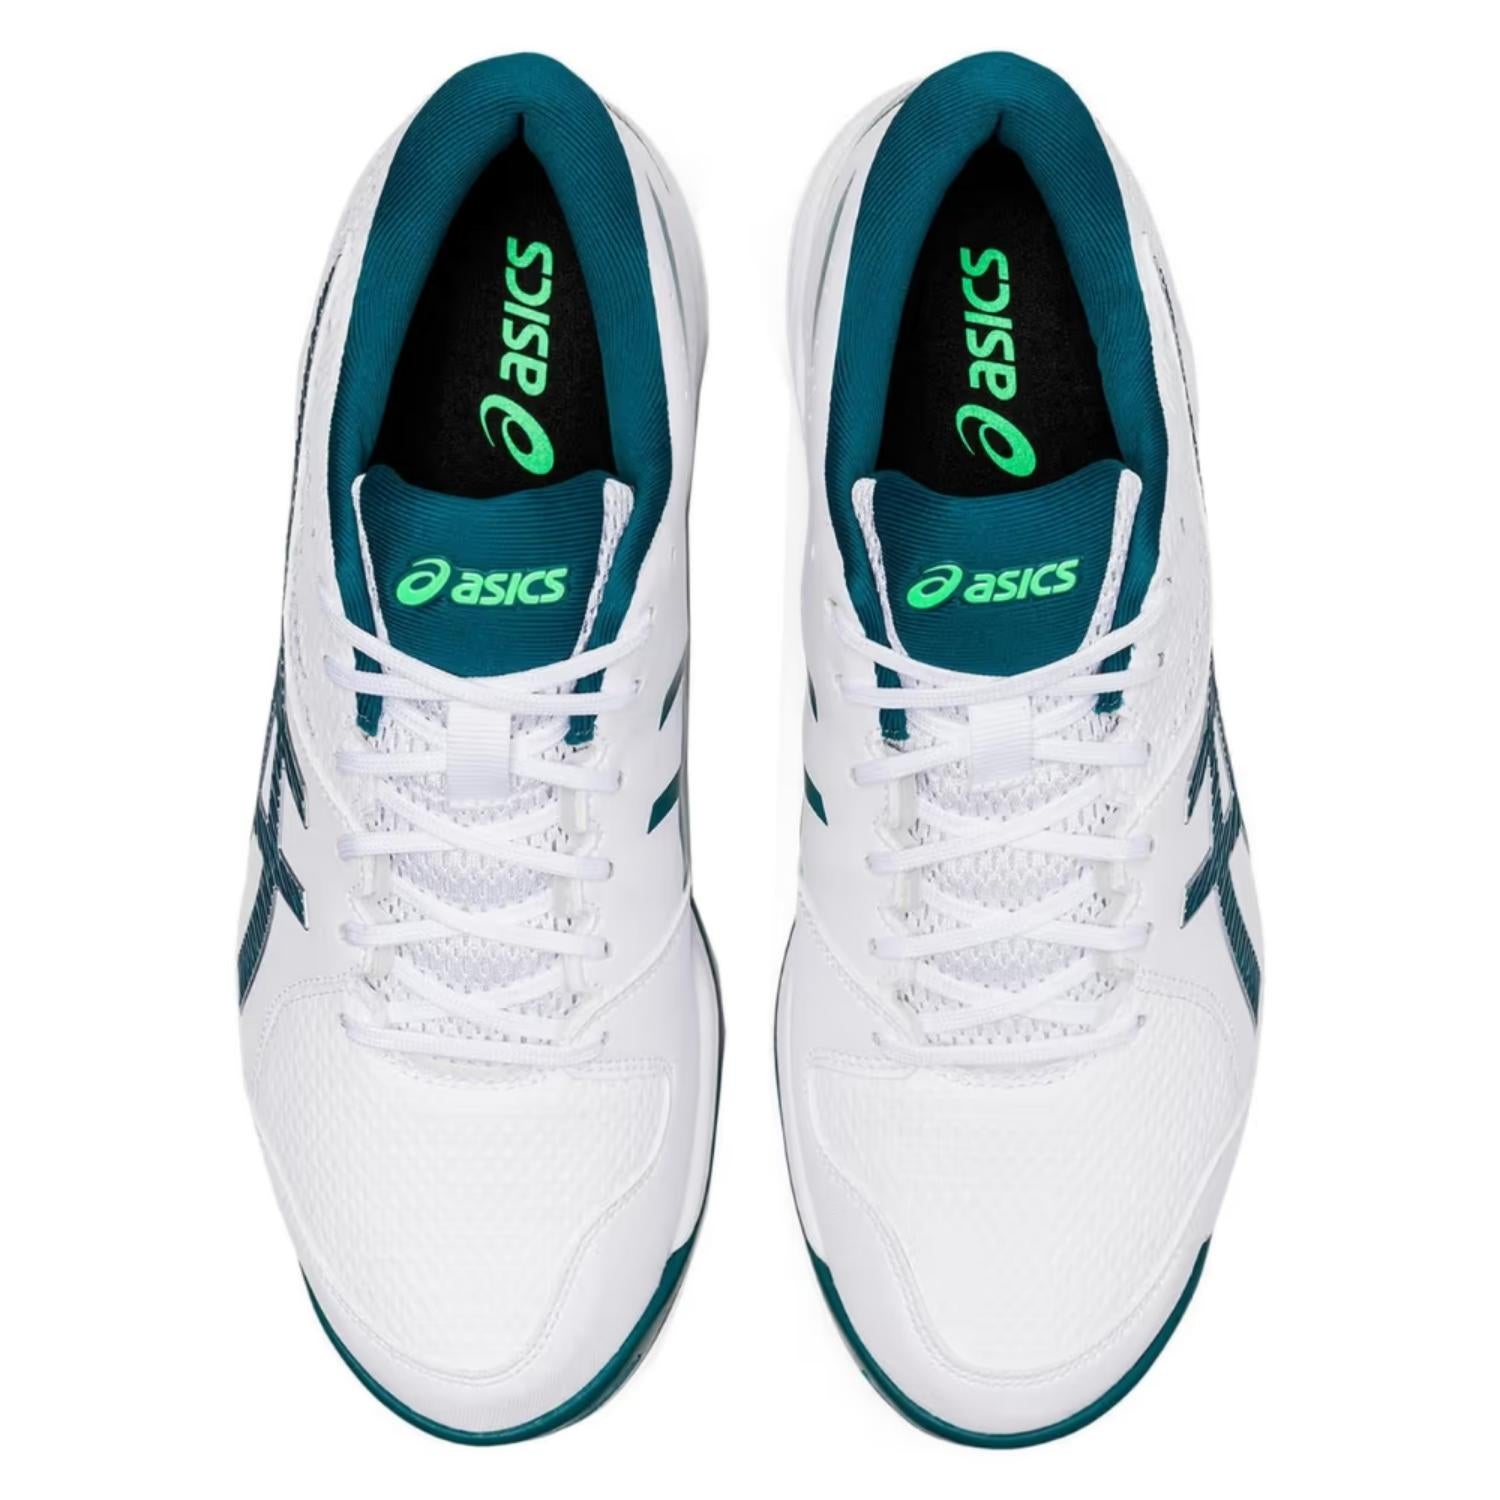 Asics Cricket Shoes, Model Gel-Peake 2, White/Velvet Pine